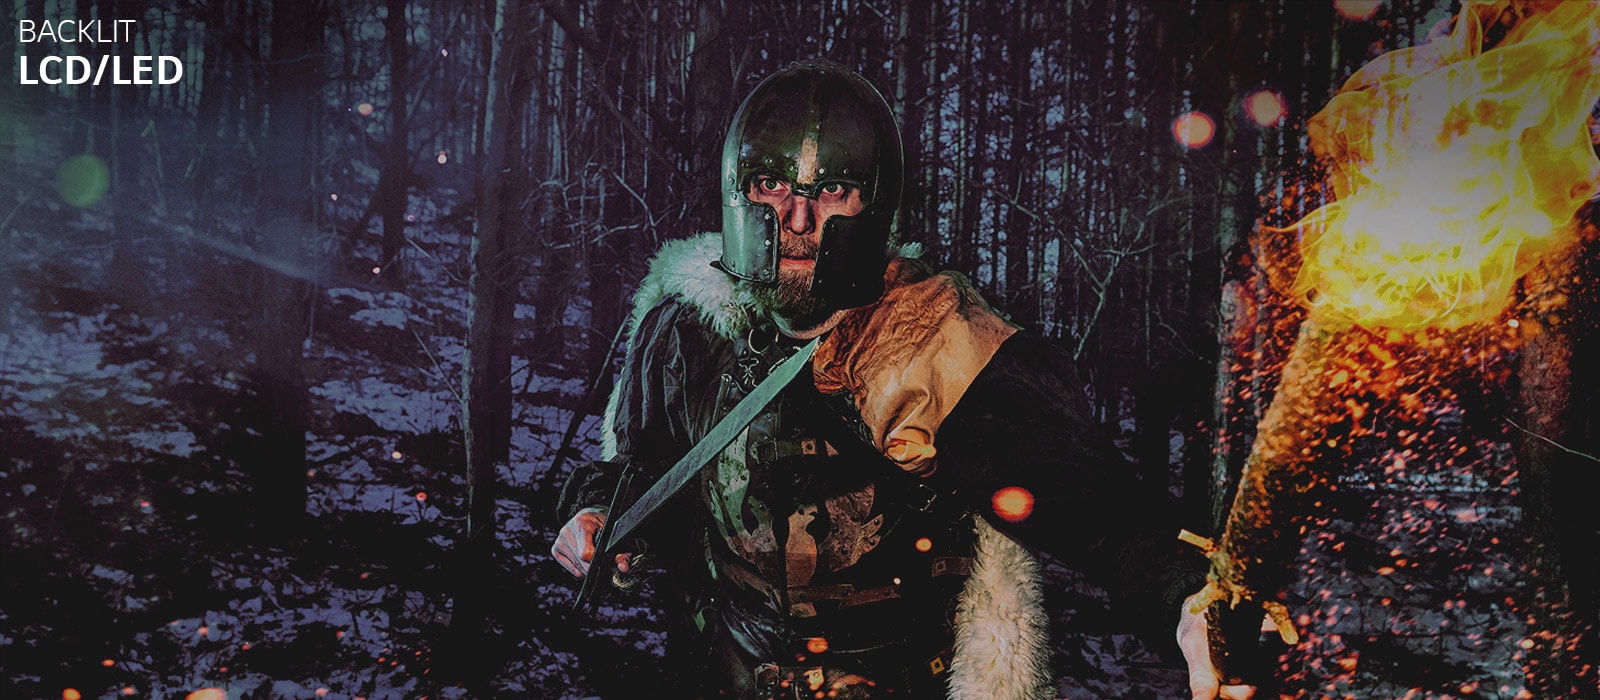 Slider-Vergleichsansicht: Zu sehen ist ein Mann, der in einem winterlichen Wald eine Rüstung sowie ein Schwert und eine Fackel trägt (Schieberegler bewegen)